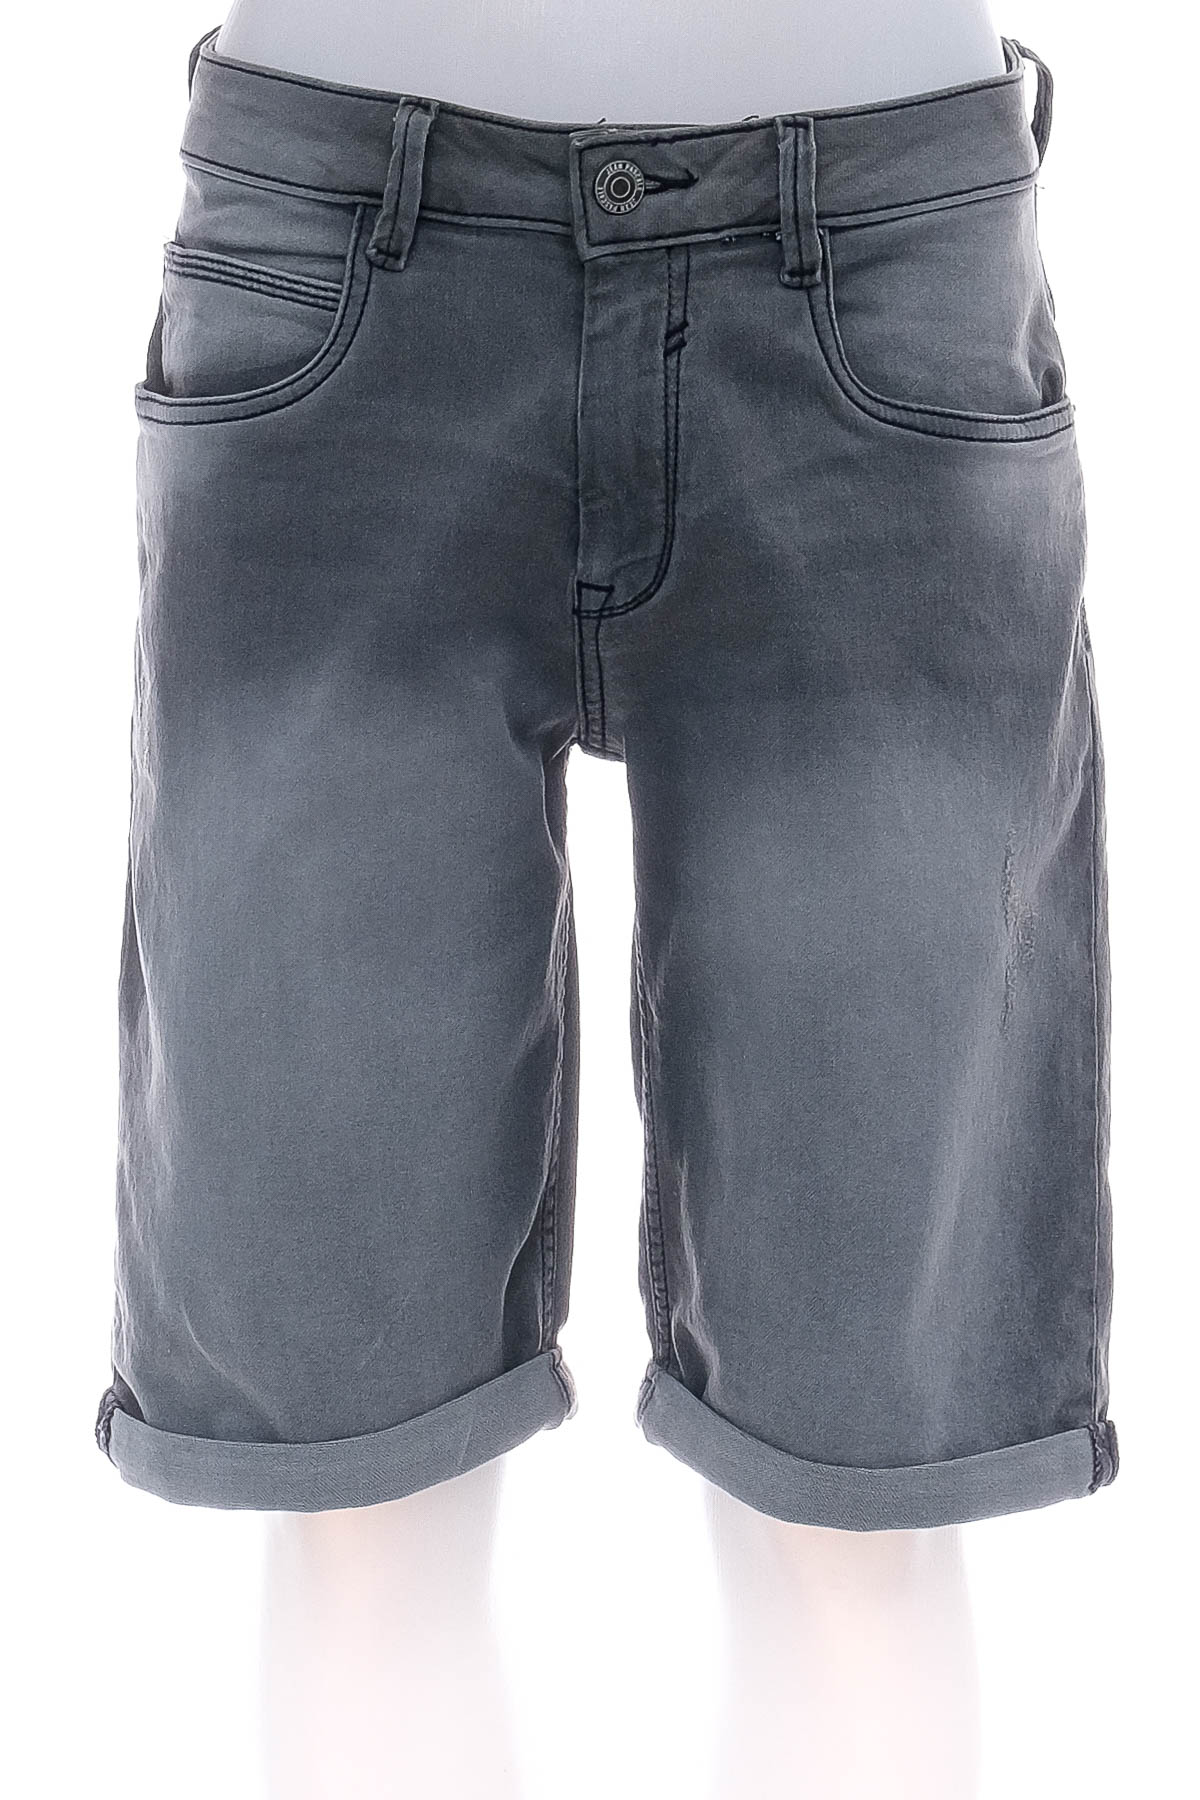 Pantaloni scurți bărbați - Jean Pascale - 0